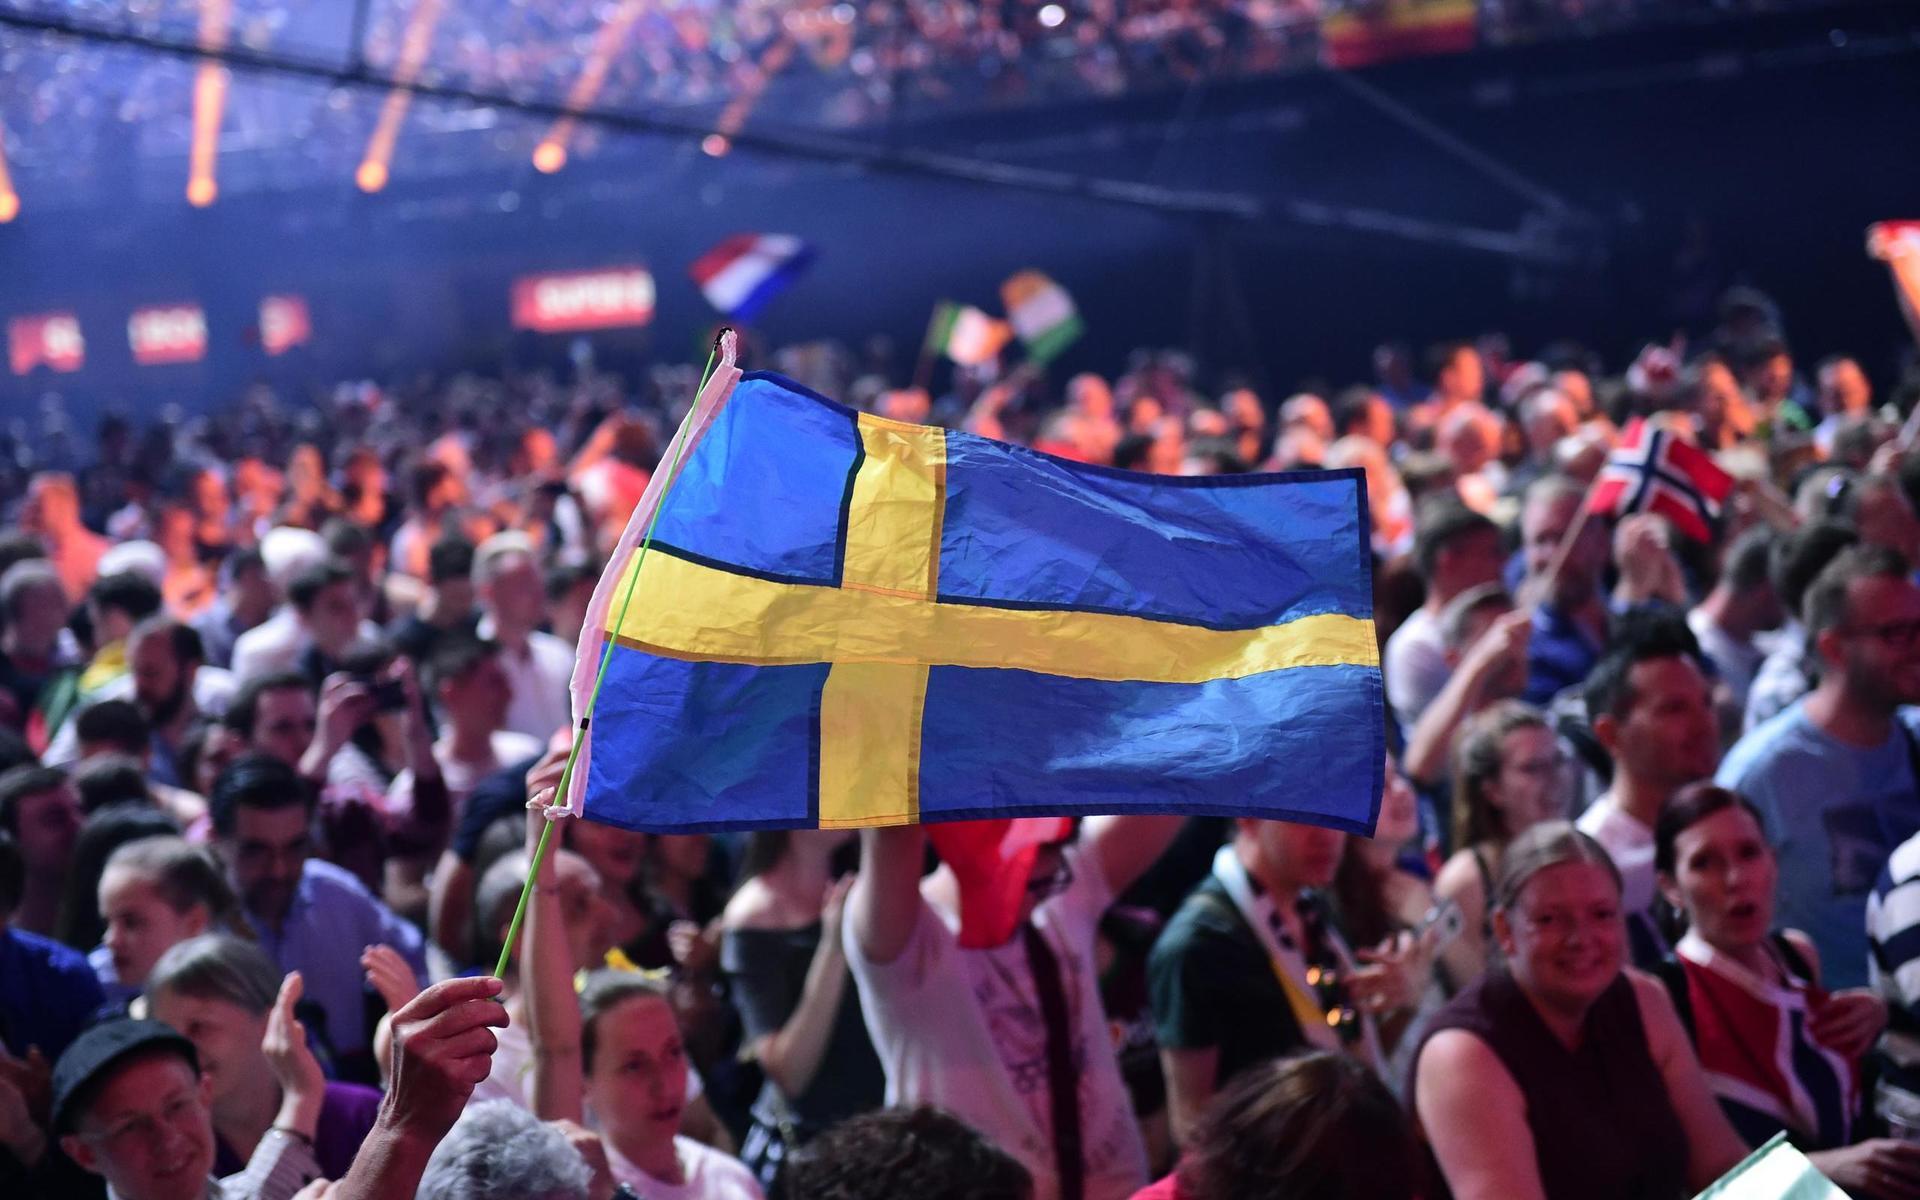 Sverige har verkligen blandat vin med vatten i de senaste årens Eurovision Song Contest. Här följer 2000-talets samtliga svenska bidrag, rankade av tidningen från det sämsta till det bästa.